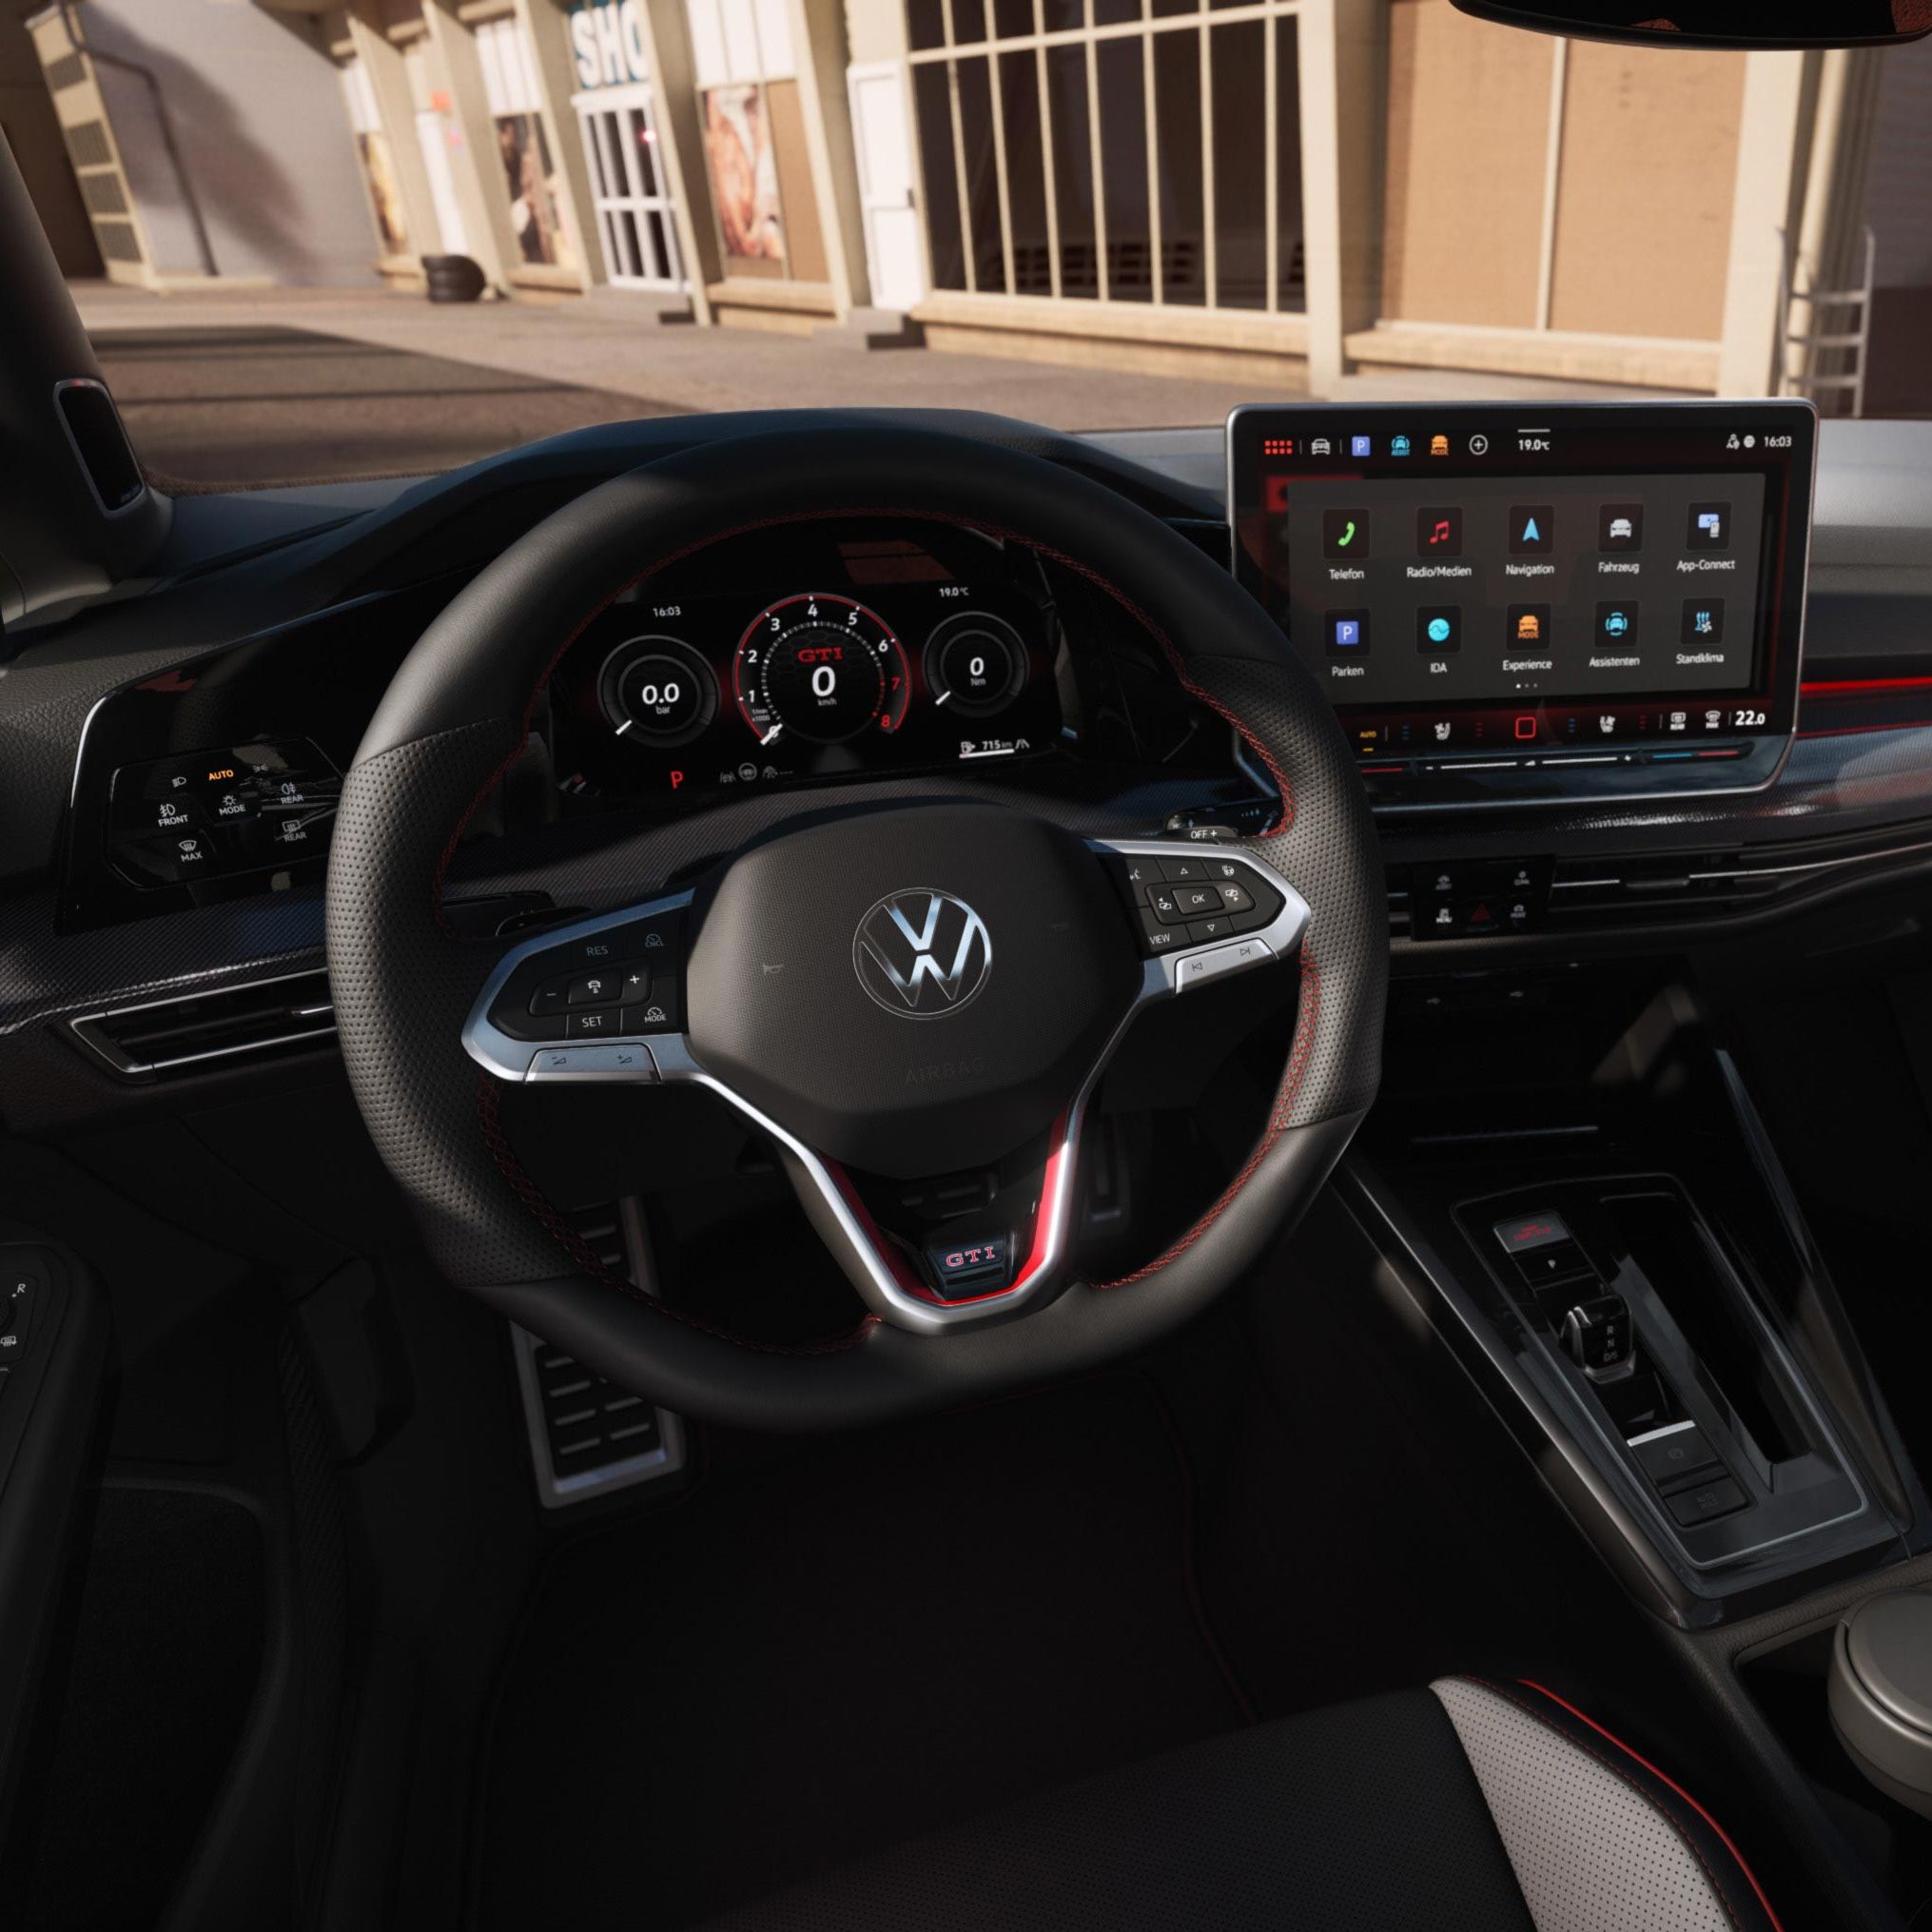 Interieur des VW Golf GTI mit Digital Cockpit und Infotainmentsystem